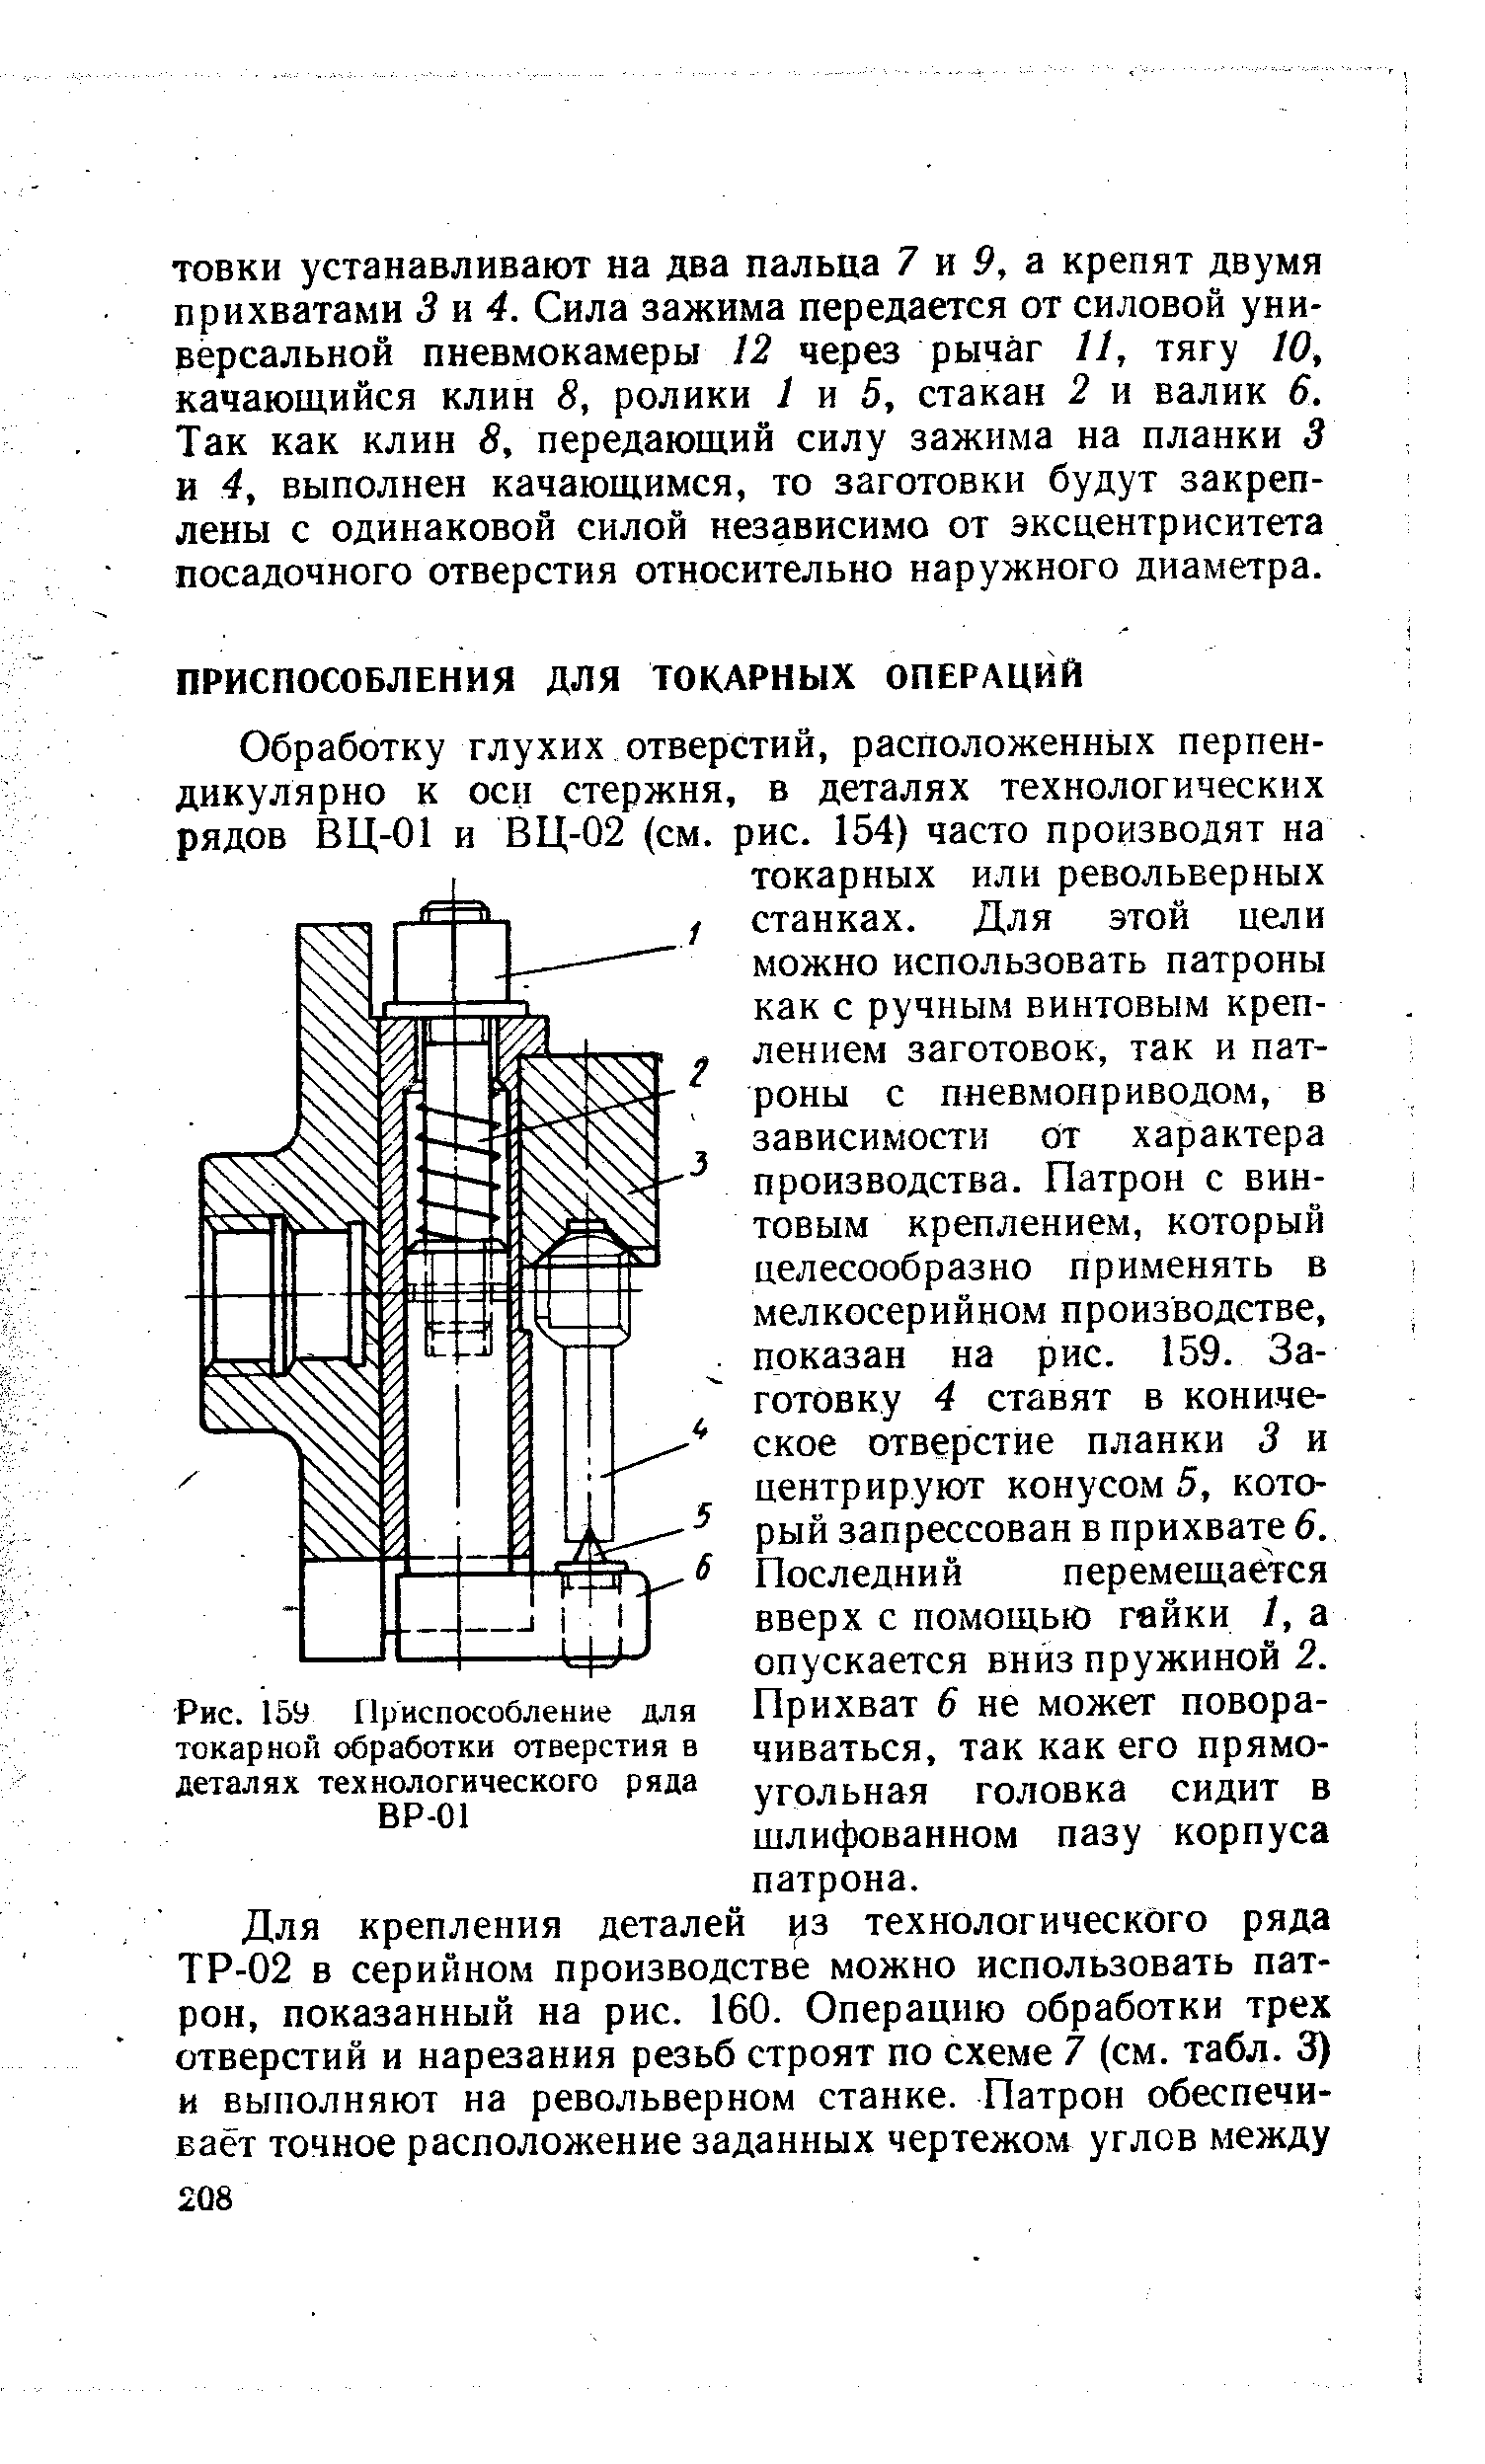 Рис. 159 Приспособление для токарной обработки отверстия в деталях технологического ряда ВР-01
